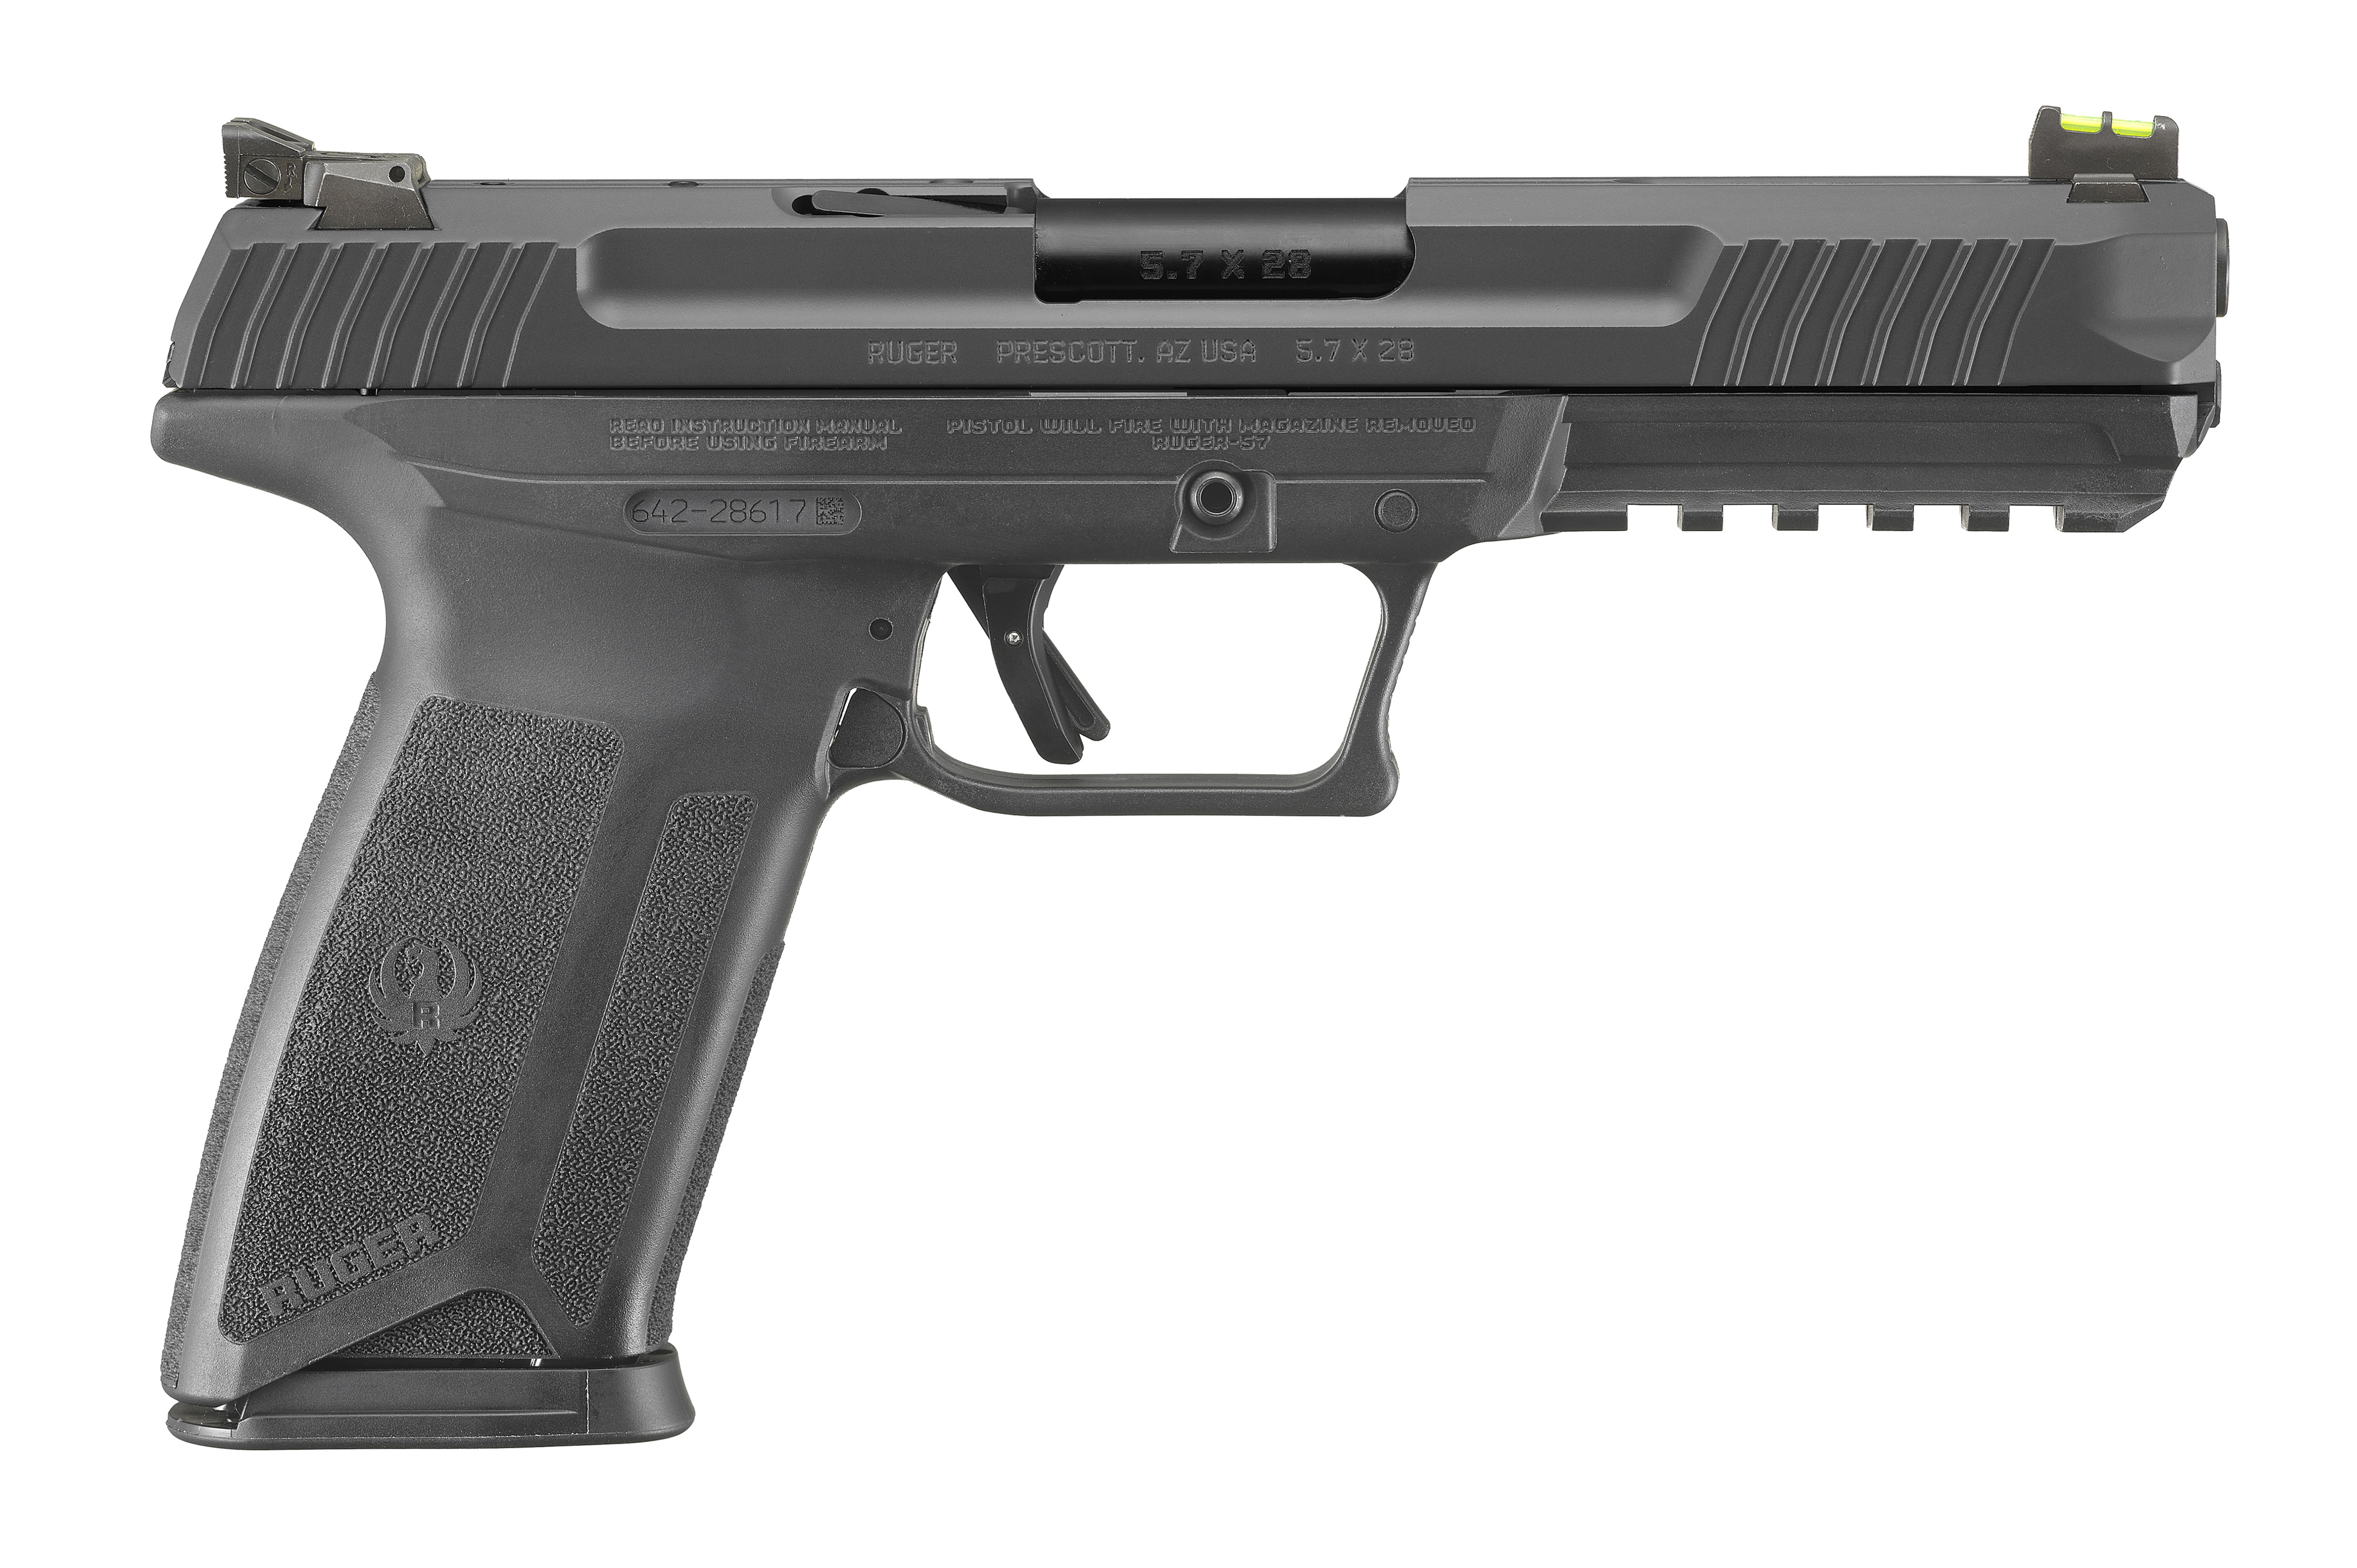 RUG 57 PRO 5.7x28 5" BLK 20RD - Handguns